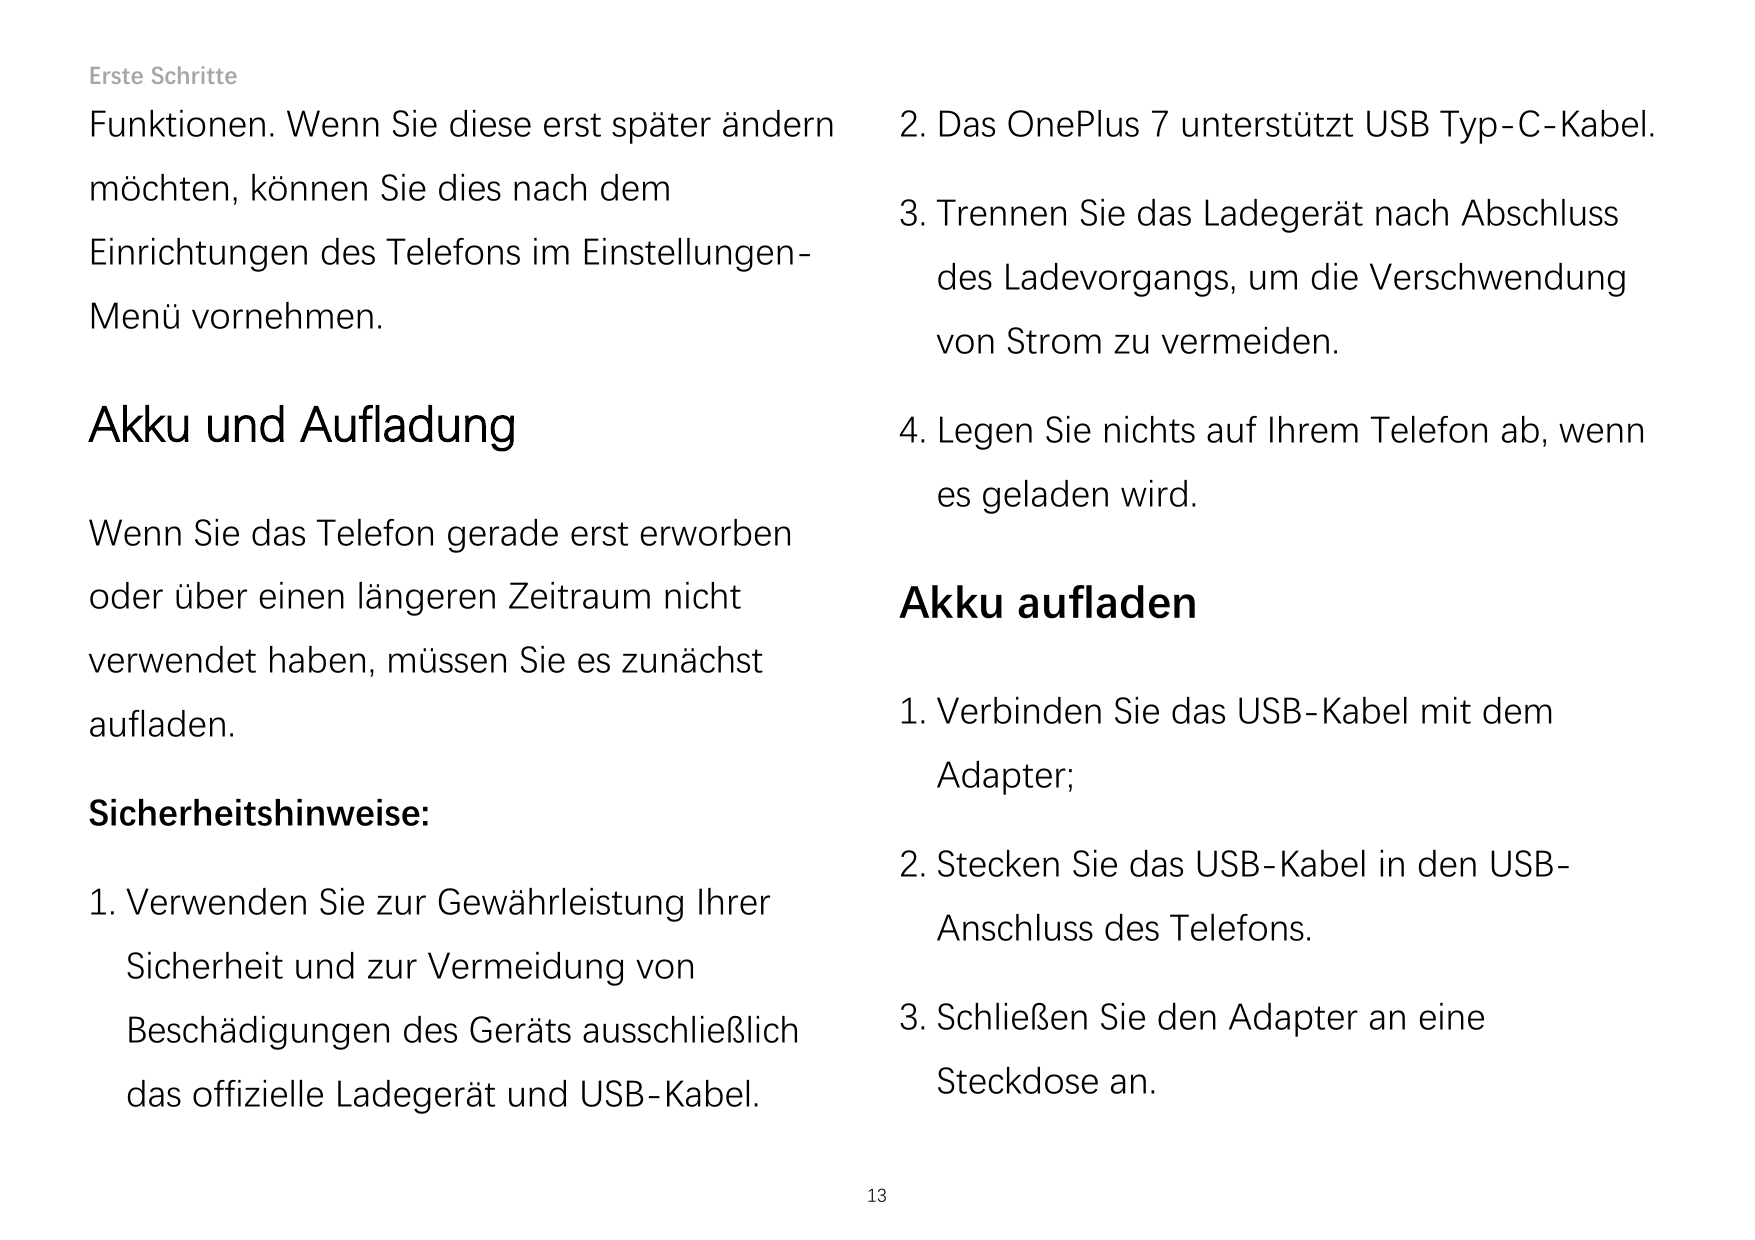 Erste Schritte2. Das OnePlus 7 unterstützt USB Typ-C-Kabel.Funktionen. Wenn Sie diese erst später ändernmöchten, können Sie dies